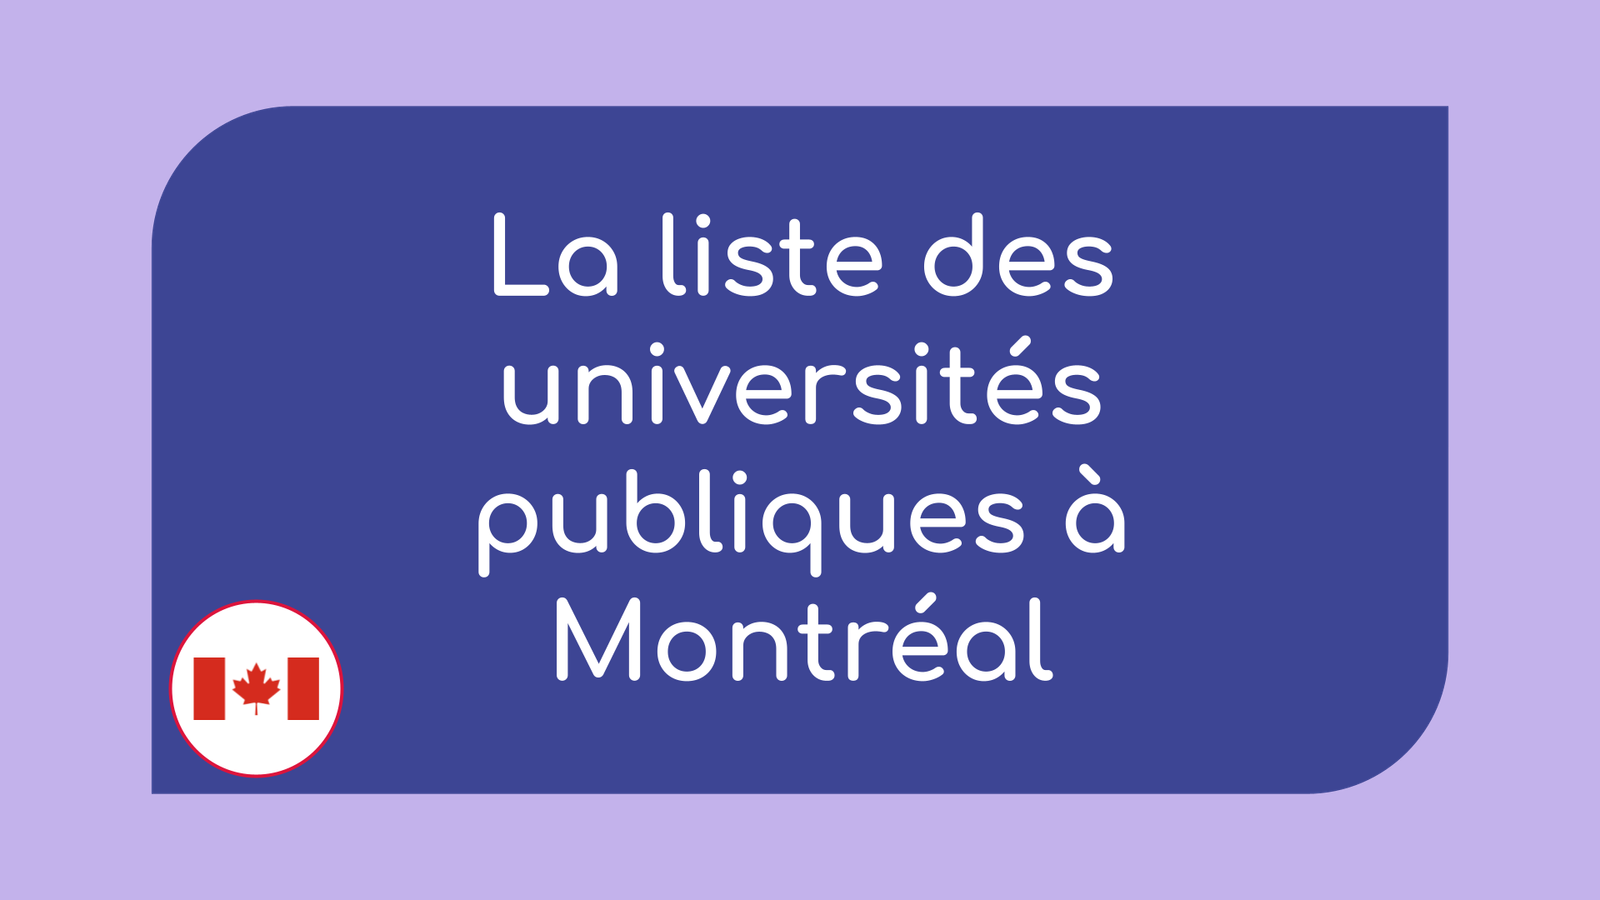 La liste des universités publiques à Montréal